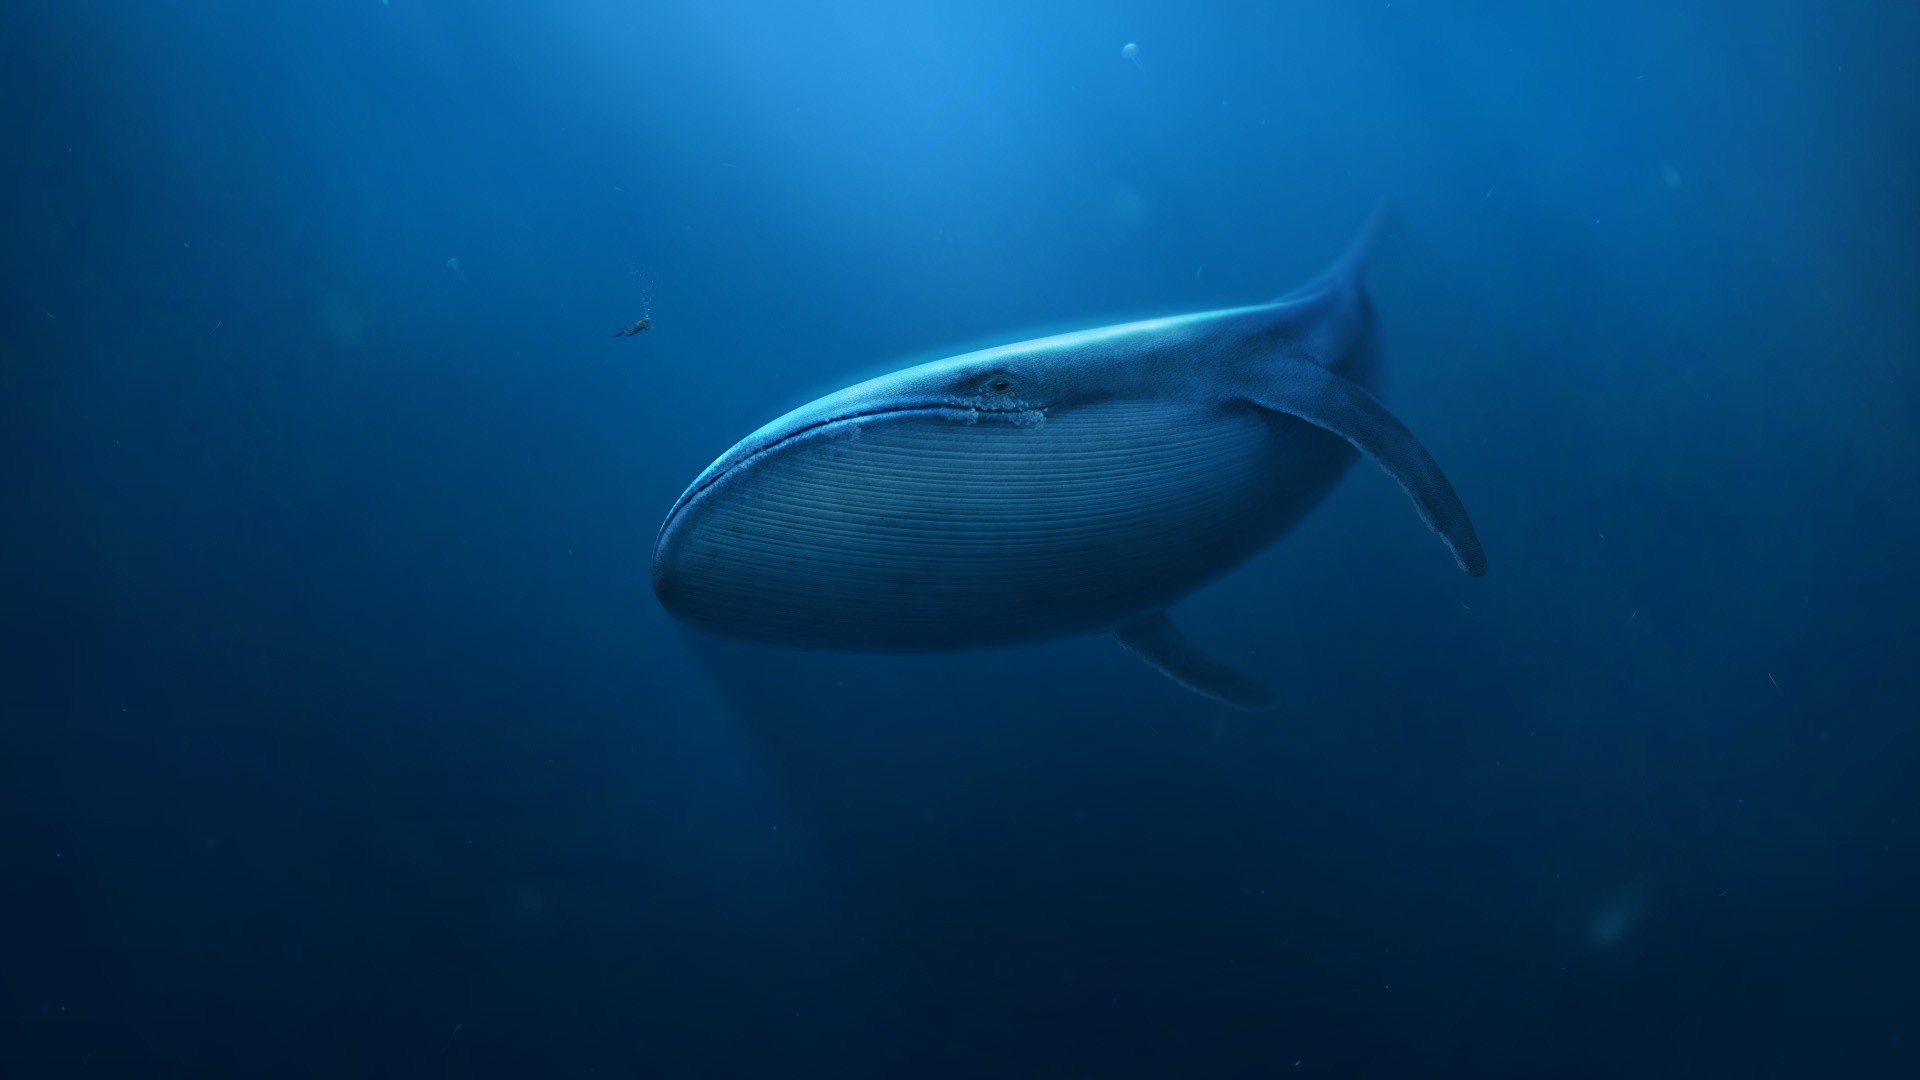 General 1920x1080 digital art underwater blue whale divers sea mammals animals